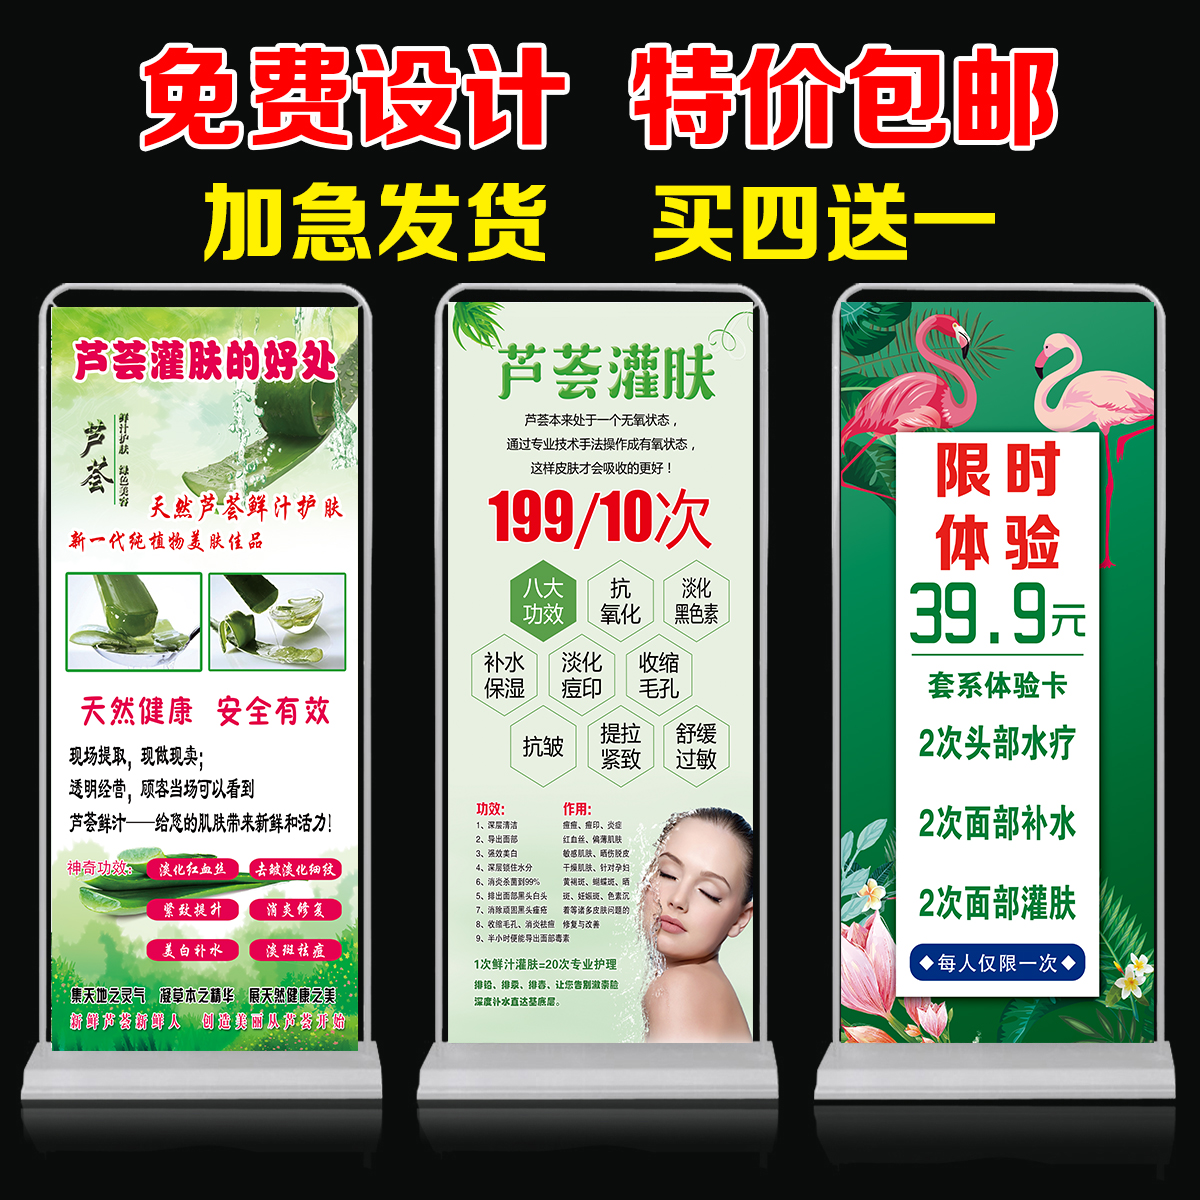 芦荟灌肤活动广告图片